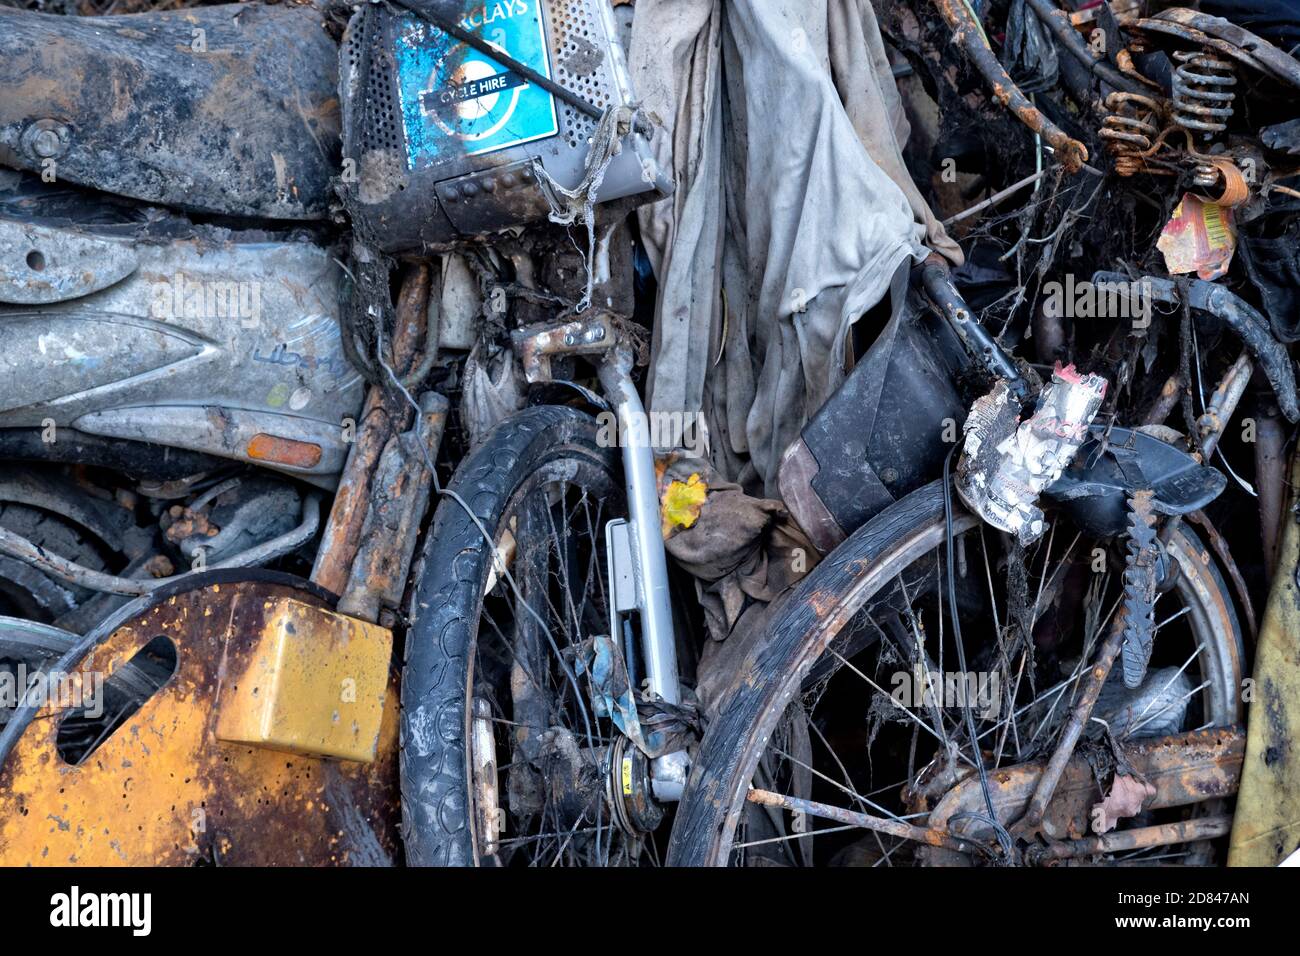 Geborgen Motorroller und Fahrräder, aus dem Regents Park Kanal von einer Gruppe von Umweltschützern mit leistungsstarken Magneten ausgebaggert. Stockfoto